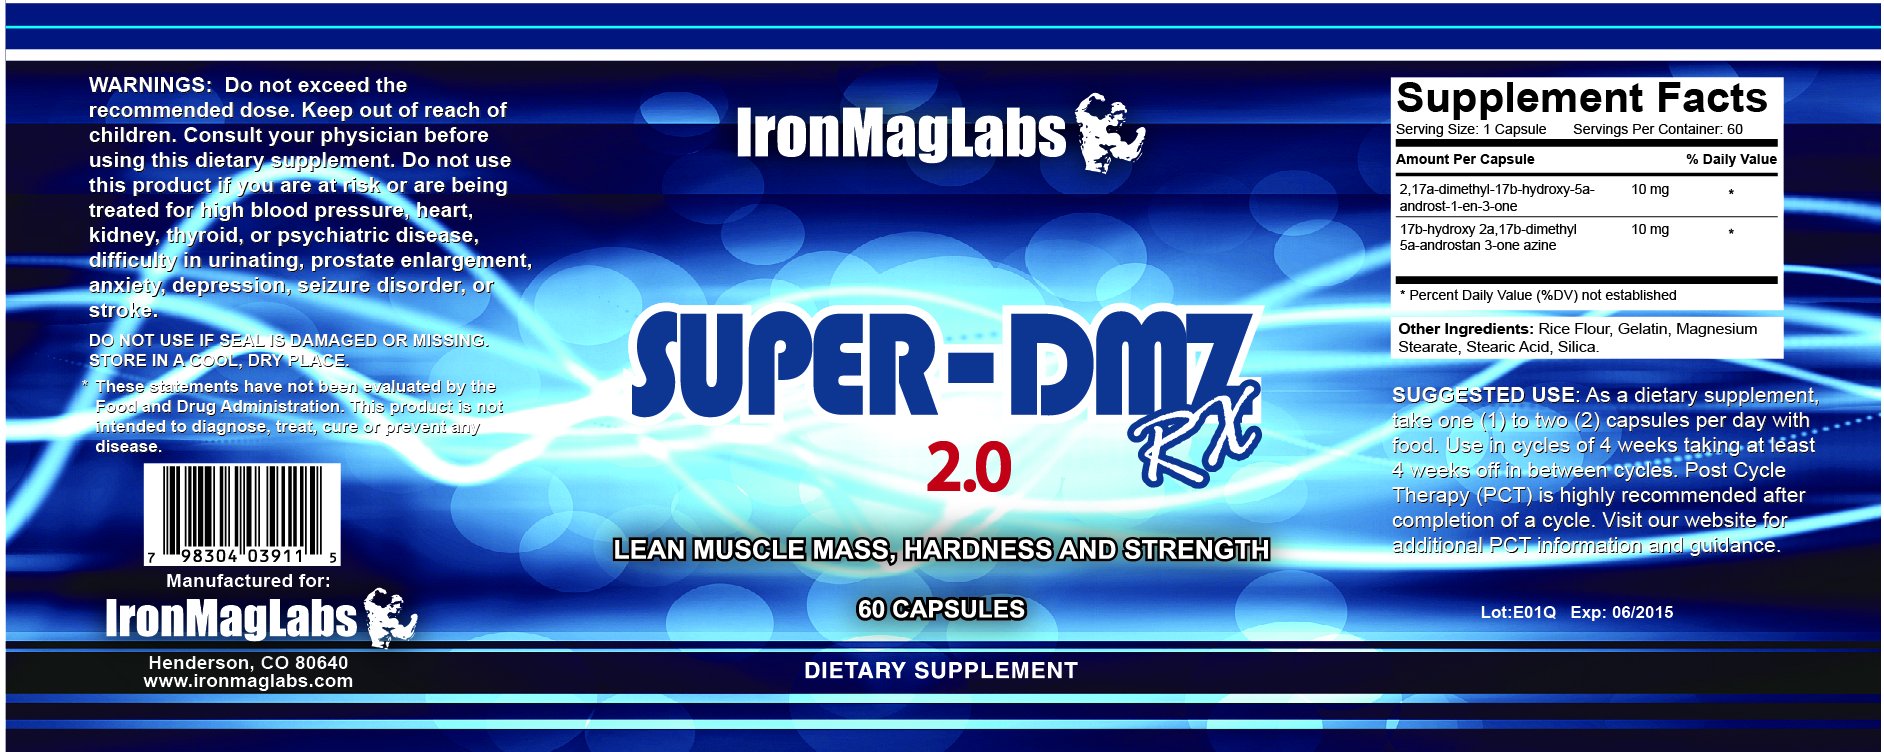 SuperDMZ-2.0-label.jpg